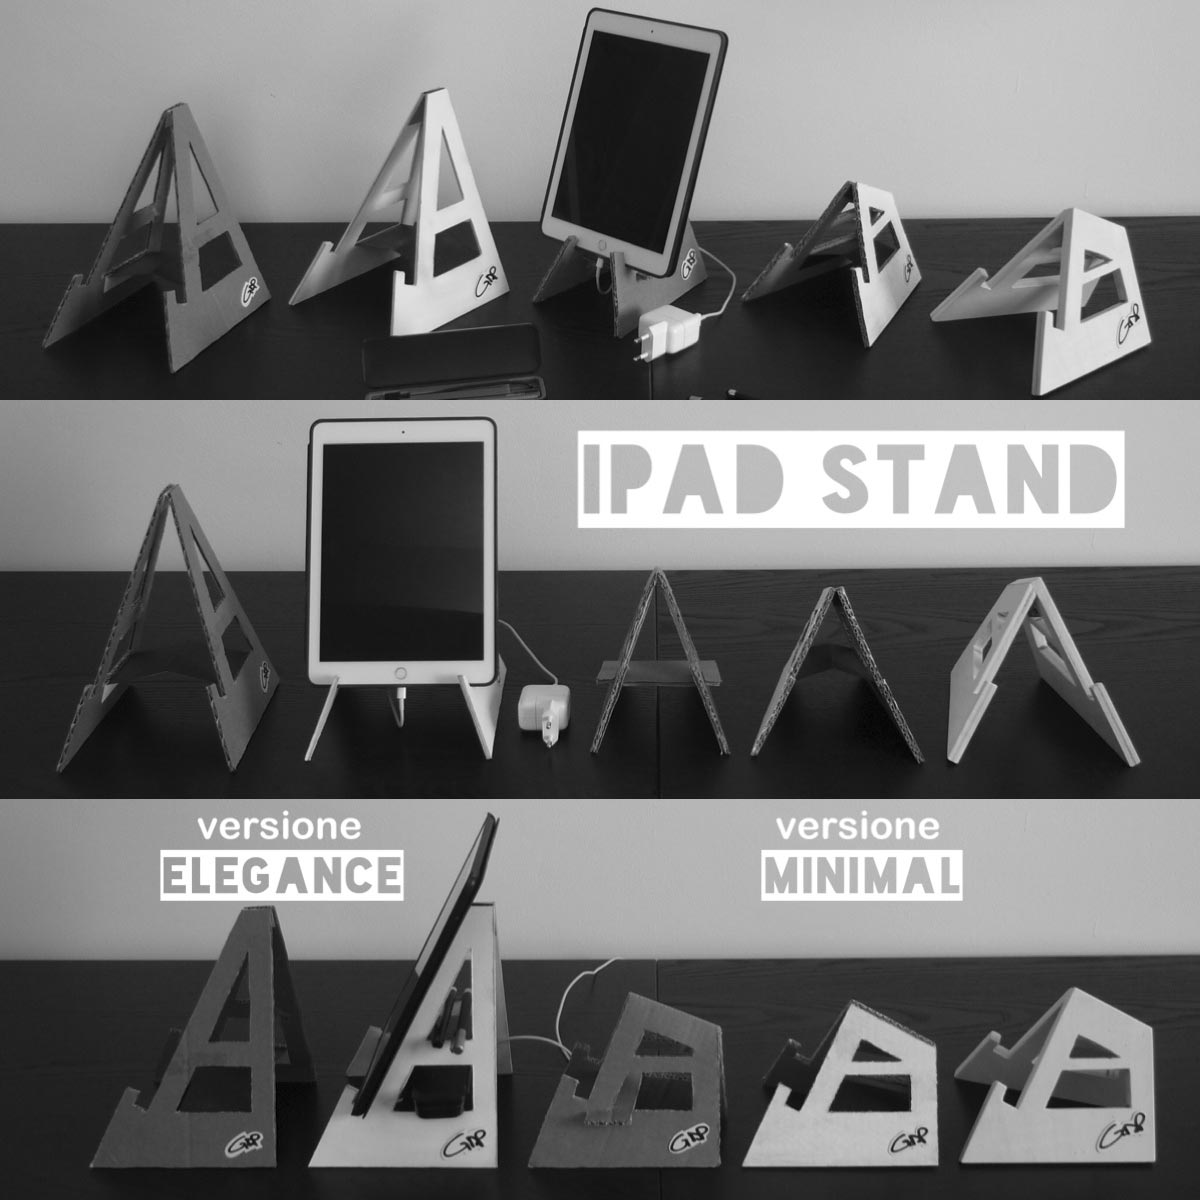 l'iPad Stand è stato realizzato in due versioni: una ELEGANCE ed una MINIMAL